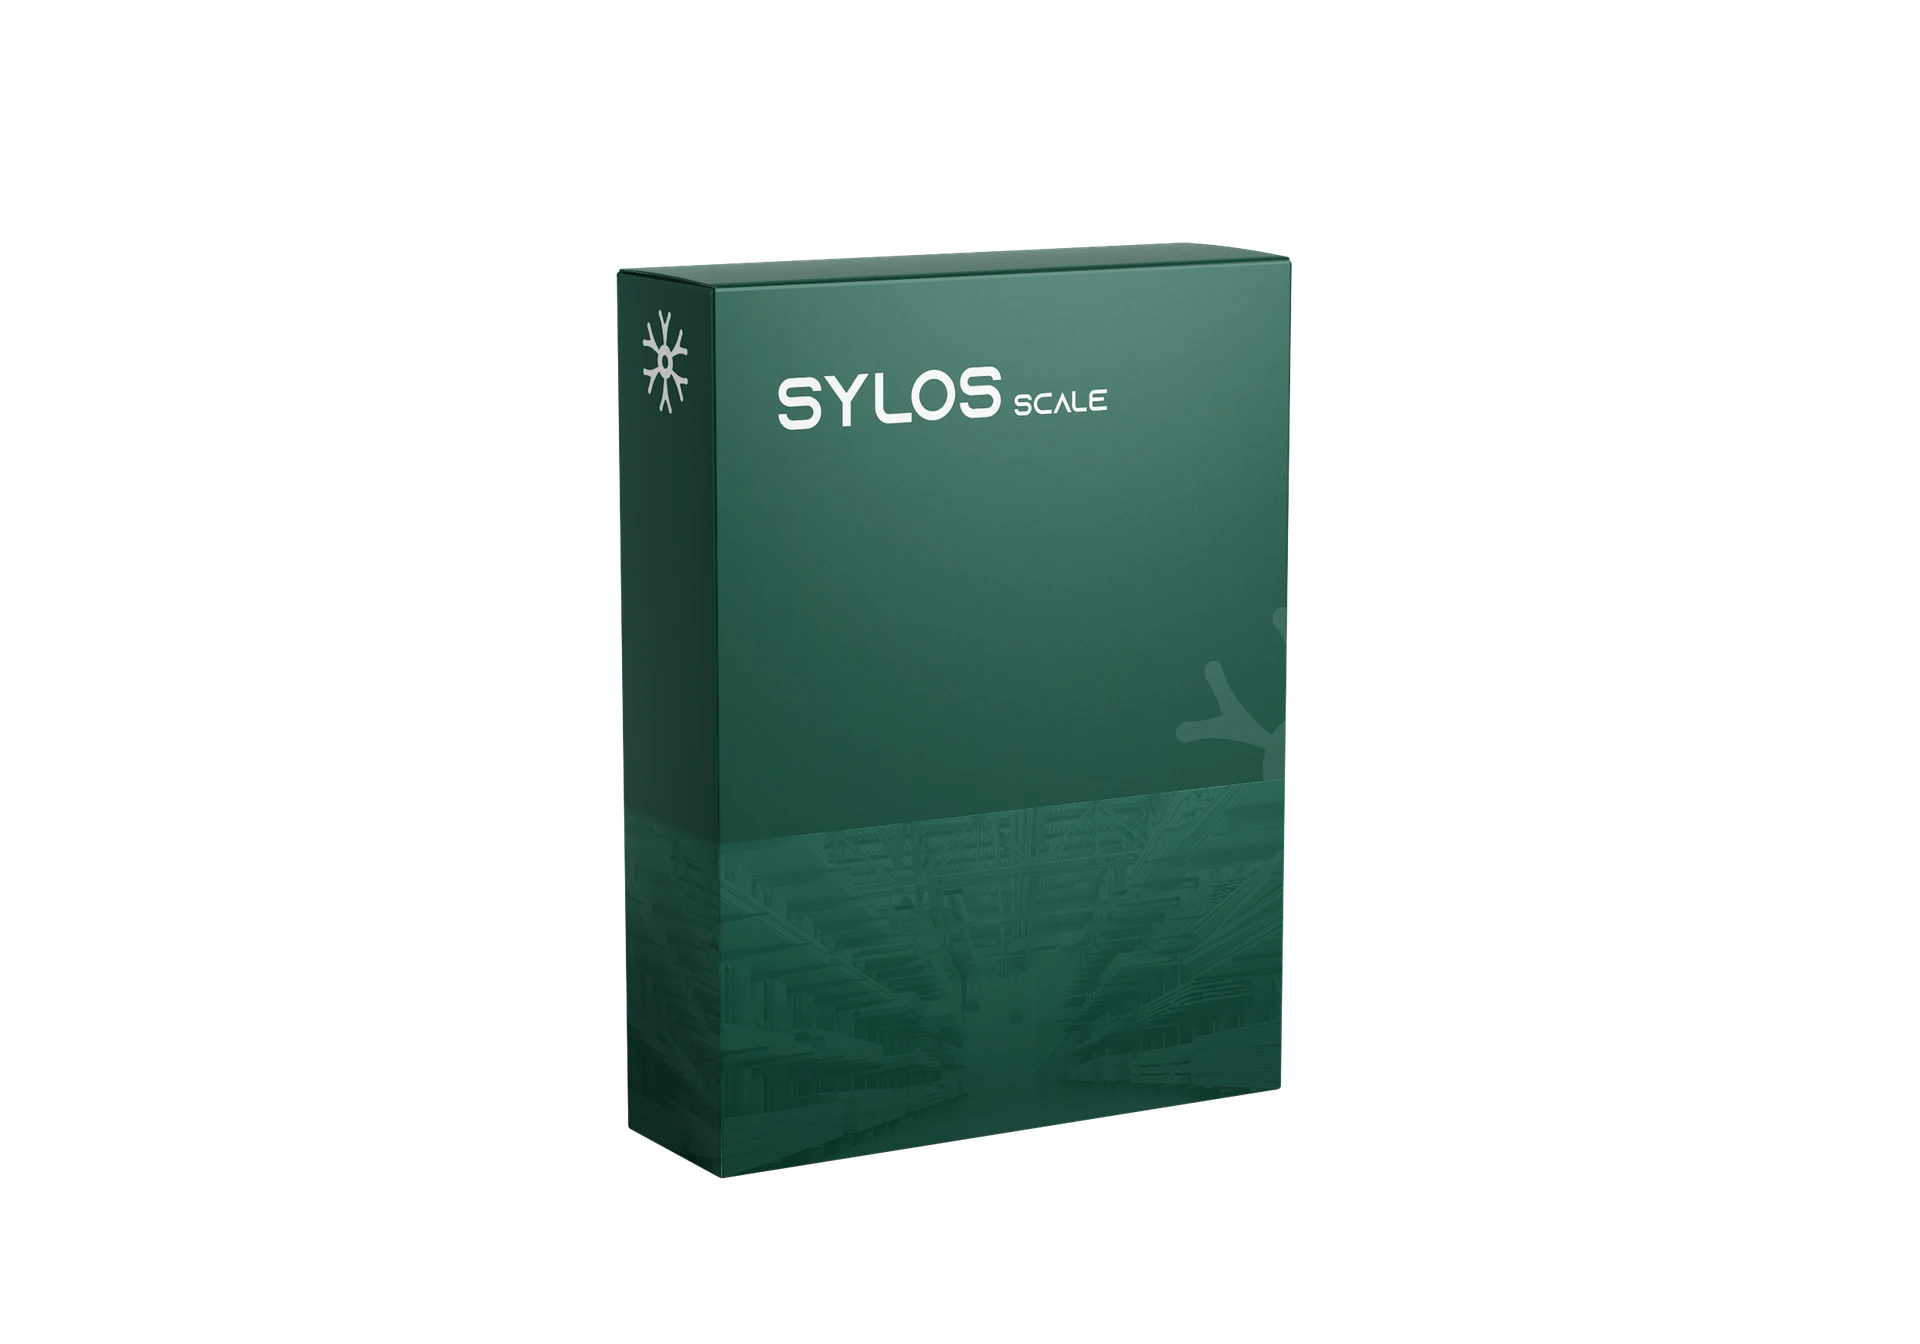 Sylos scale